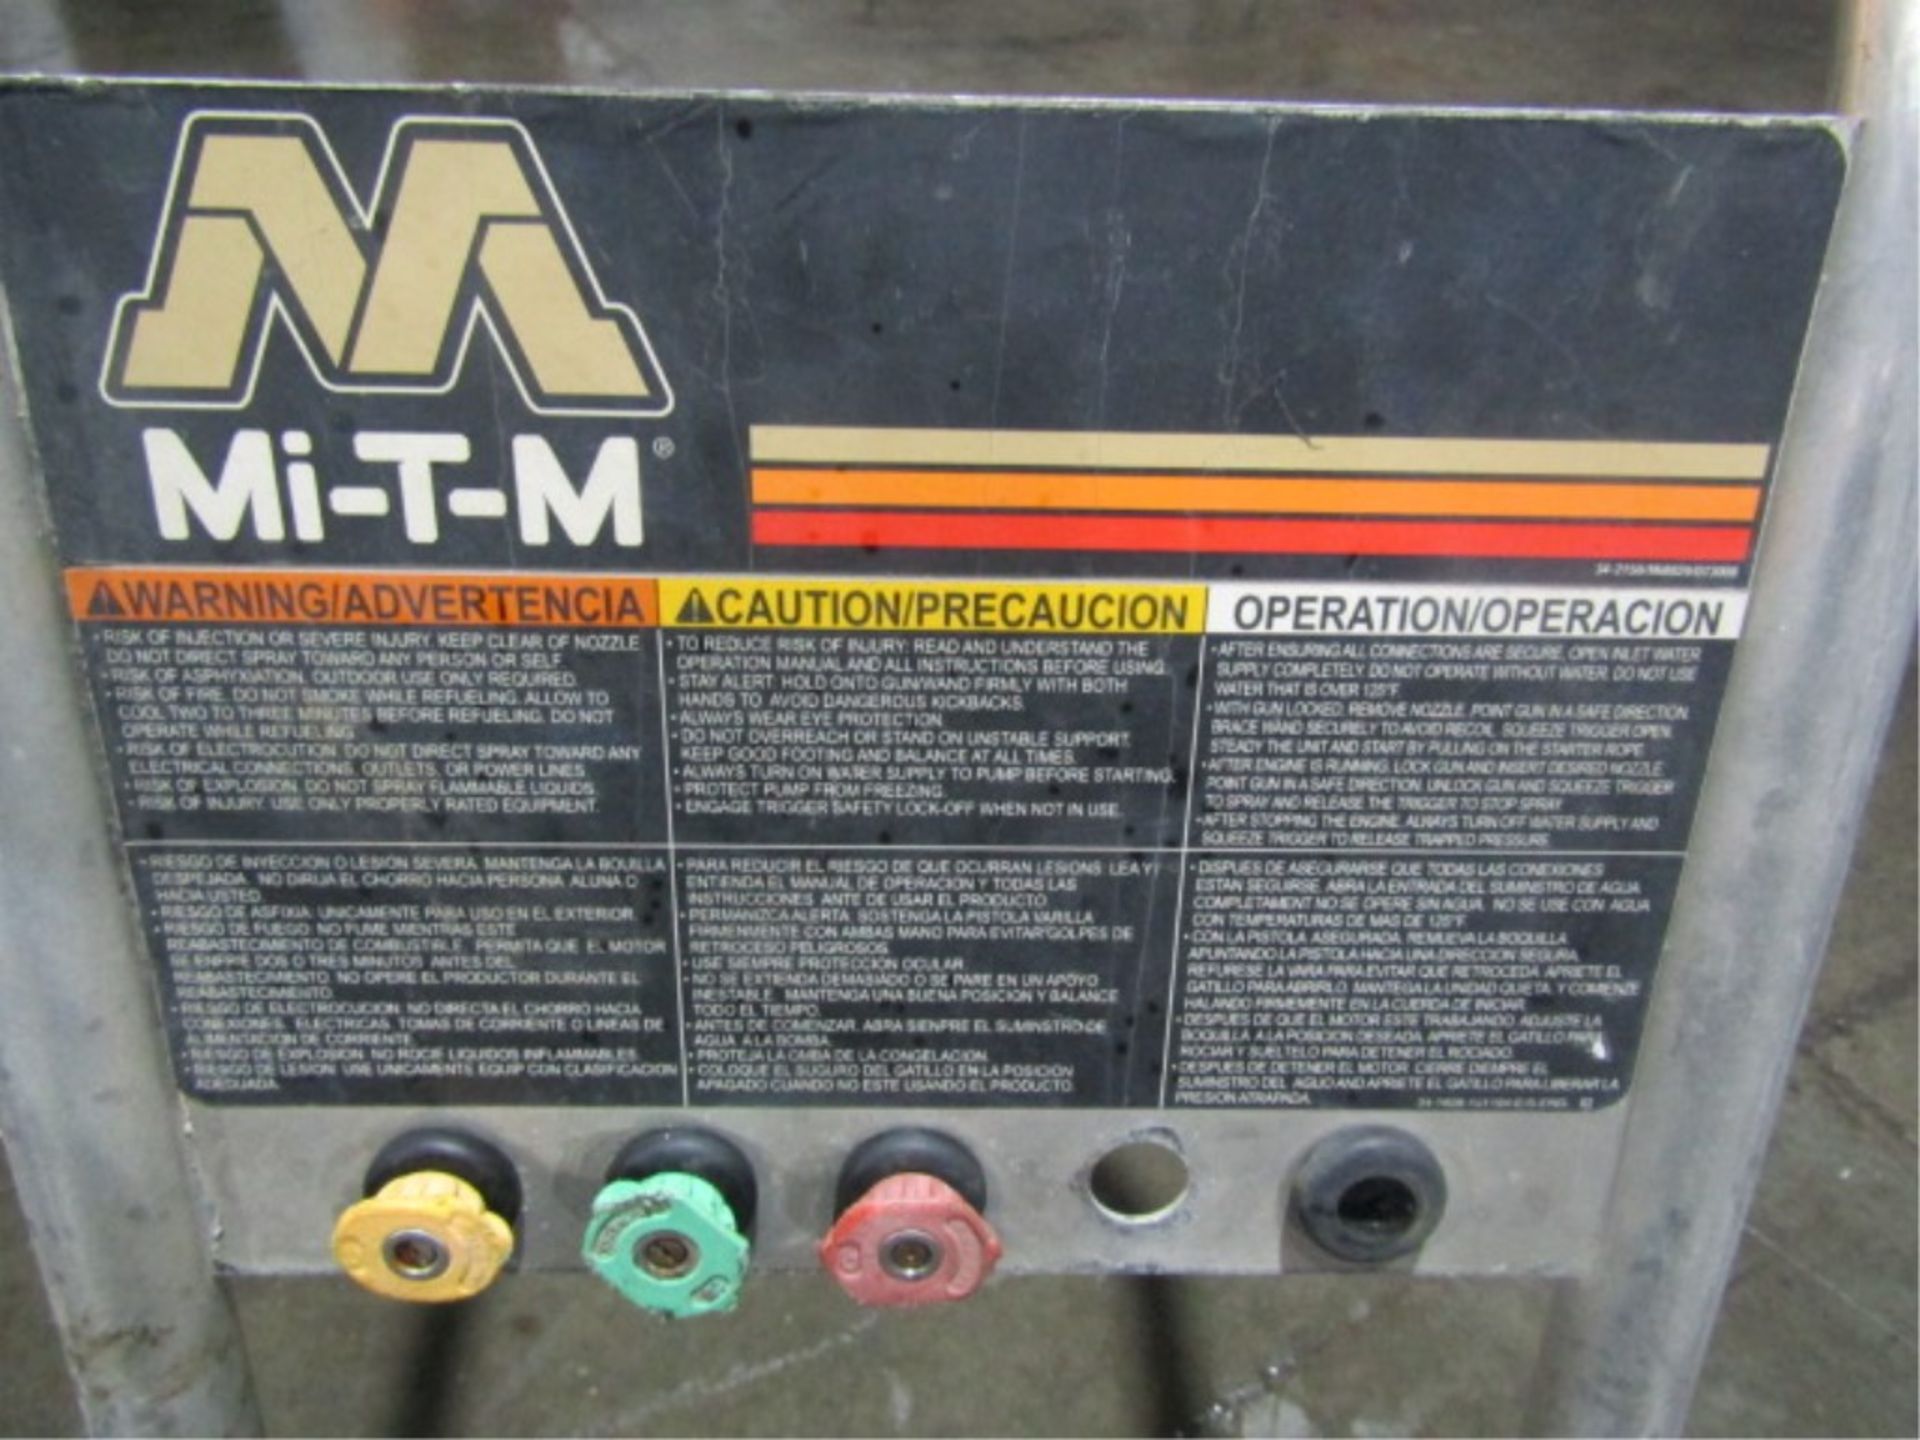 MTM CA-3504-0M4B Pressure Washer, Honda GX390, 3500 PSI, Serial #10536812 - Image 3 of 7